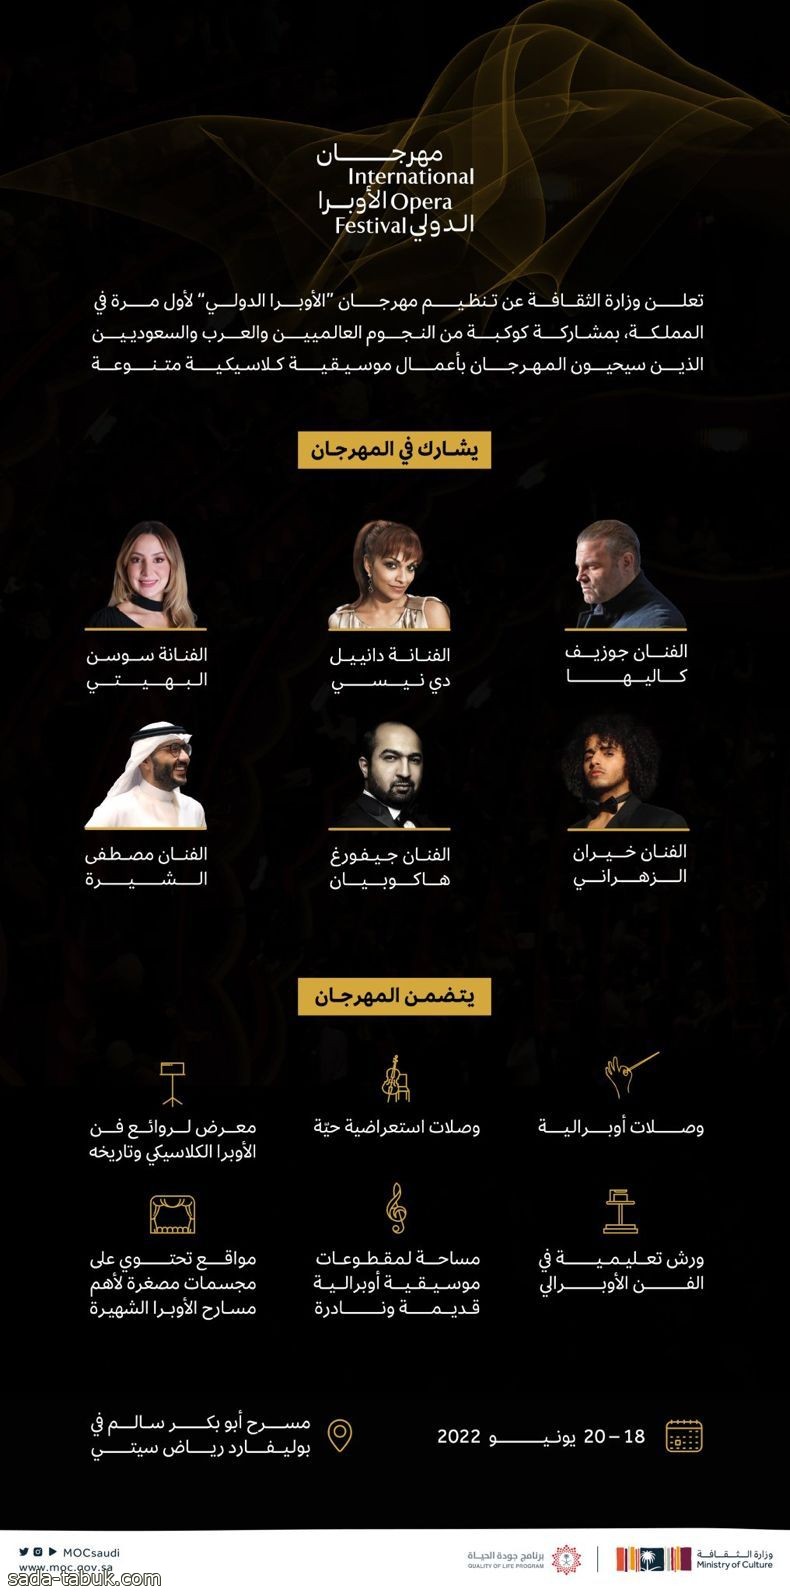 لأول مرة في المملكة .. بوليفارد رياض سيتي يستضيف مهرجان الأوبرا الدولي على مسرح "أبو بكر سالم"